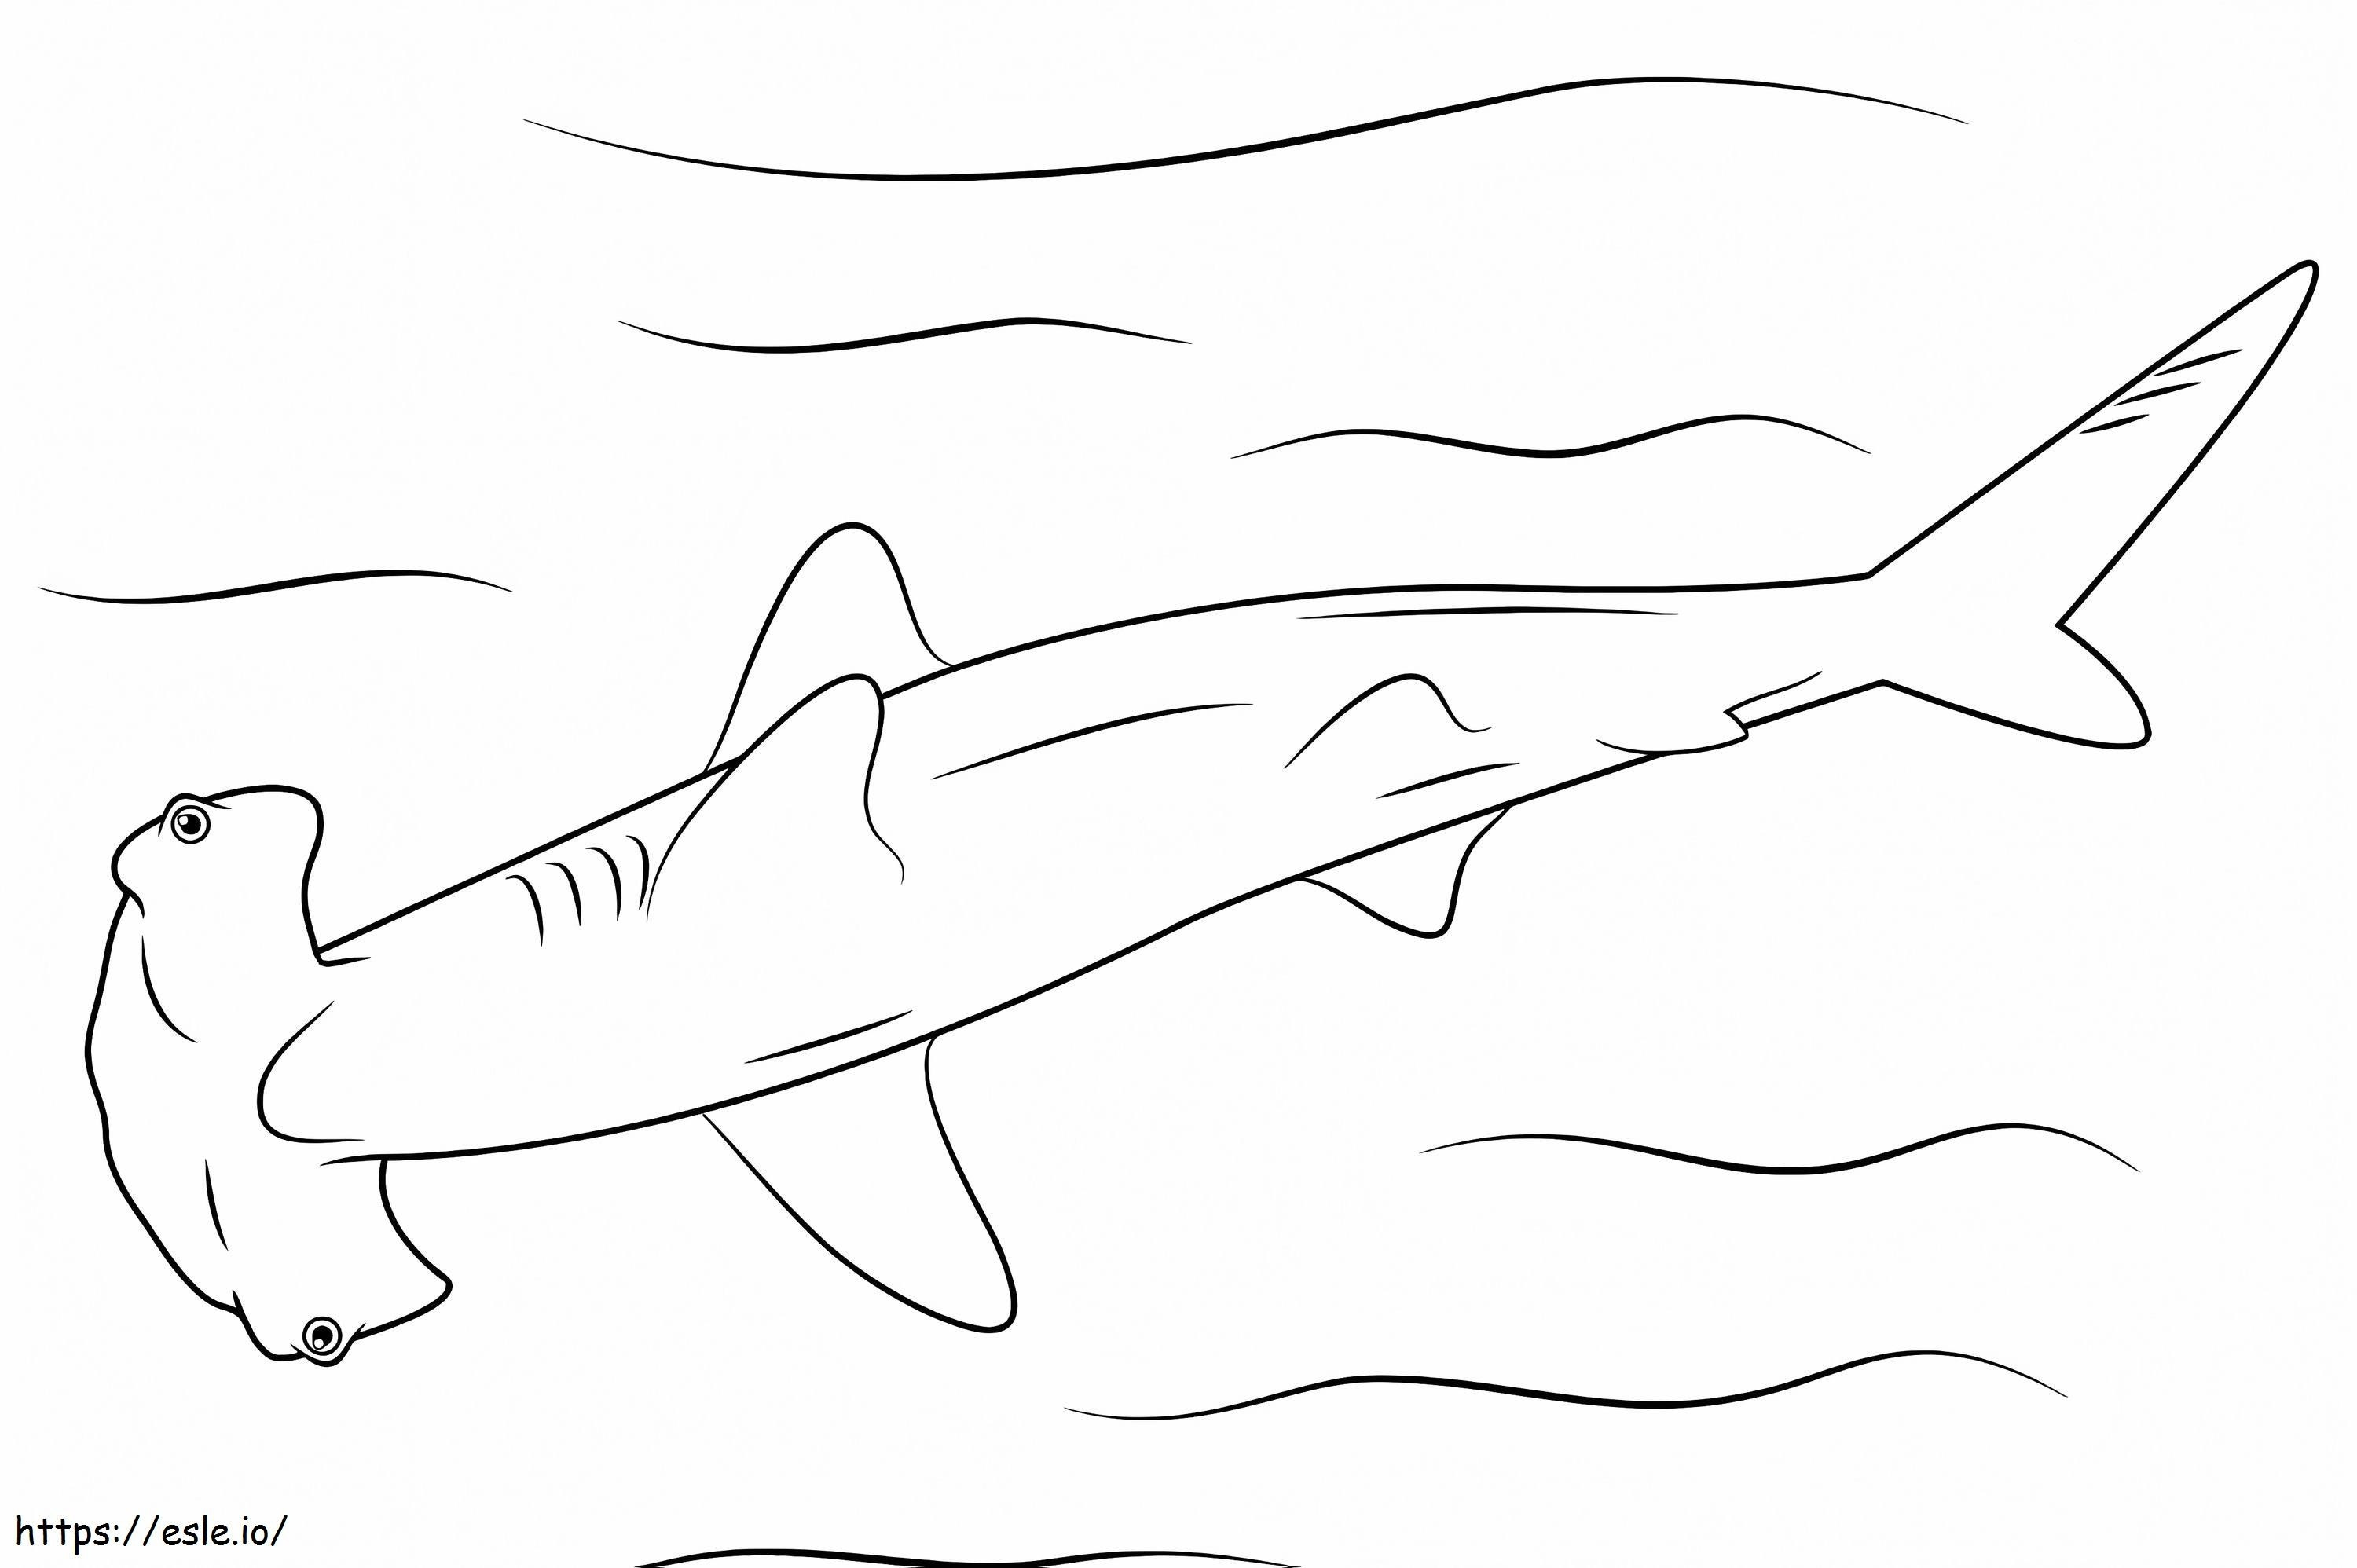 Tubarão-martelo fácil para colorir